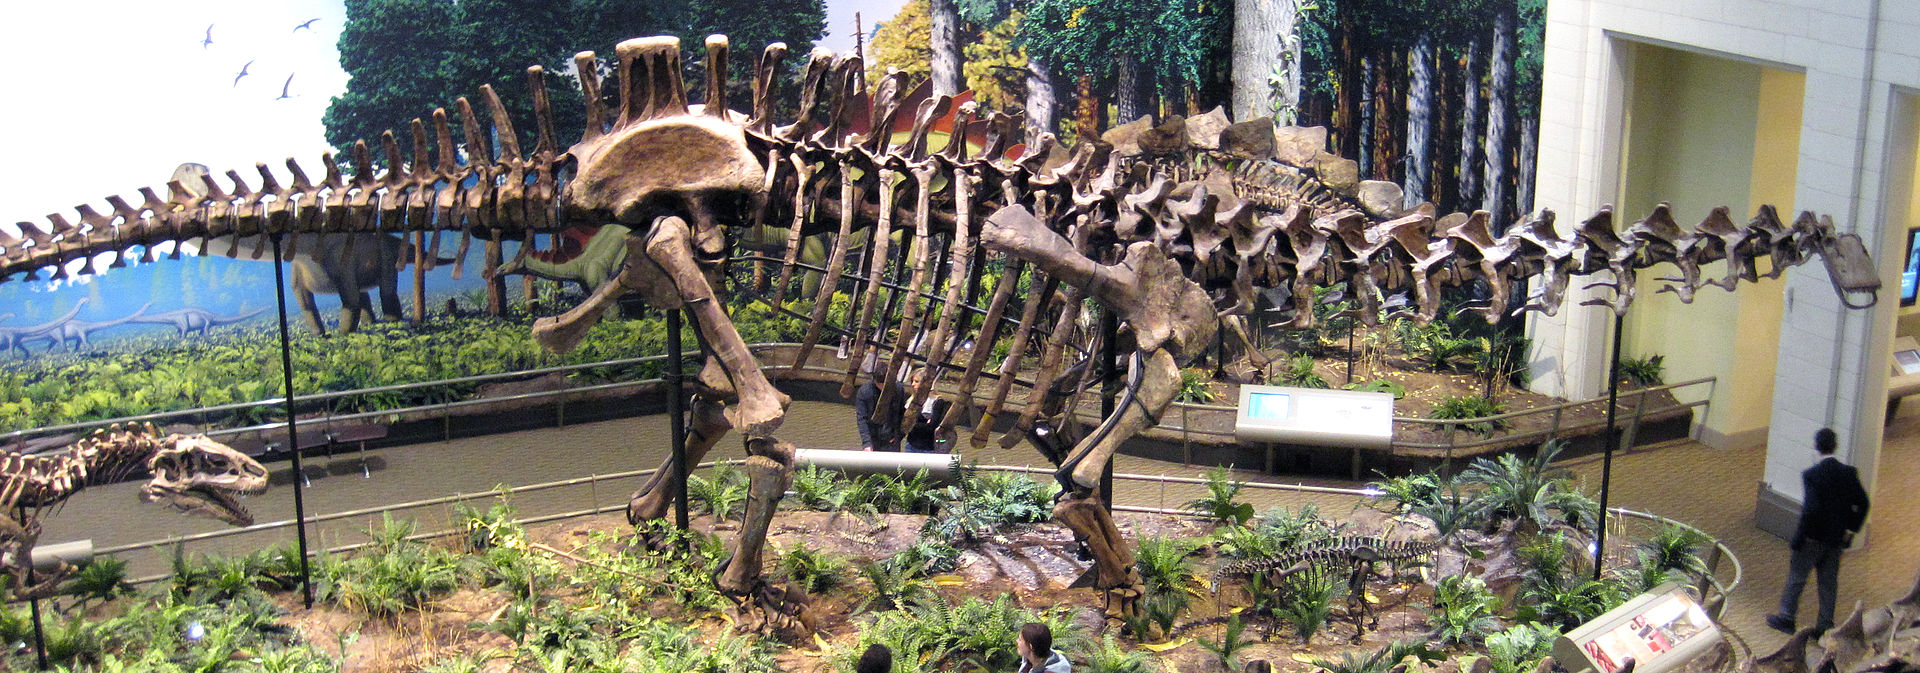 Boční pohled na kostru druhu Apatosaurus louisae, konkrétně exemplář CM 3018 (s replikou lebky jiného exempláře – CM 11162). Tato kostra představuje největšího známého suchozemského živočicha, u něhož máme k dispozici prakticky kompletní skelet. Hmot